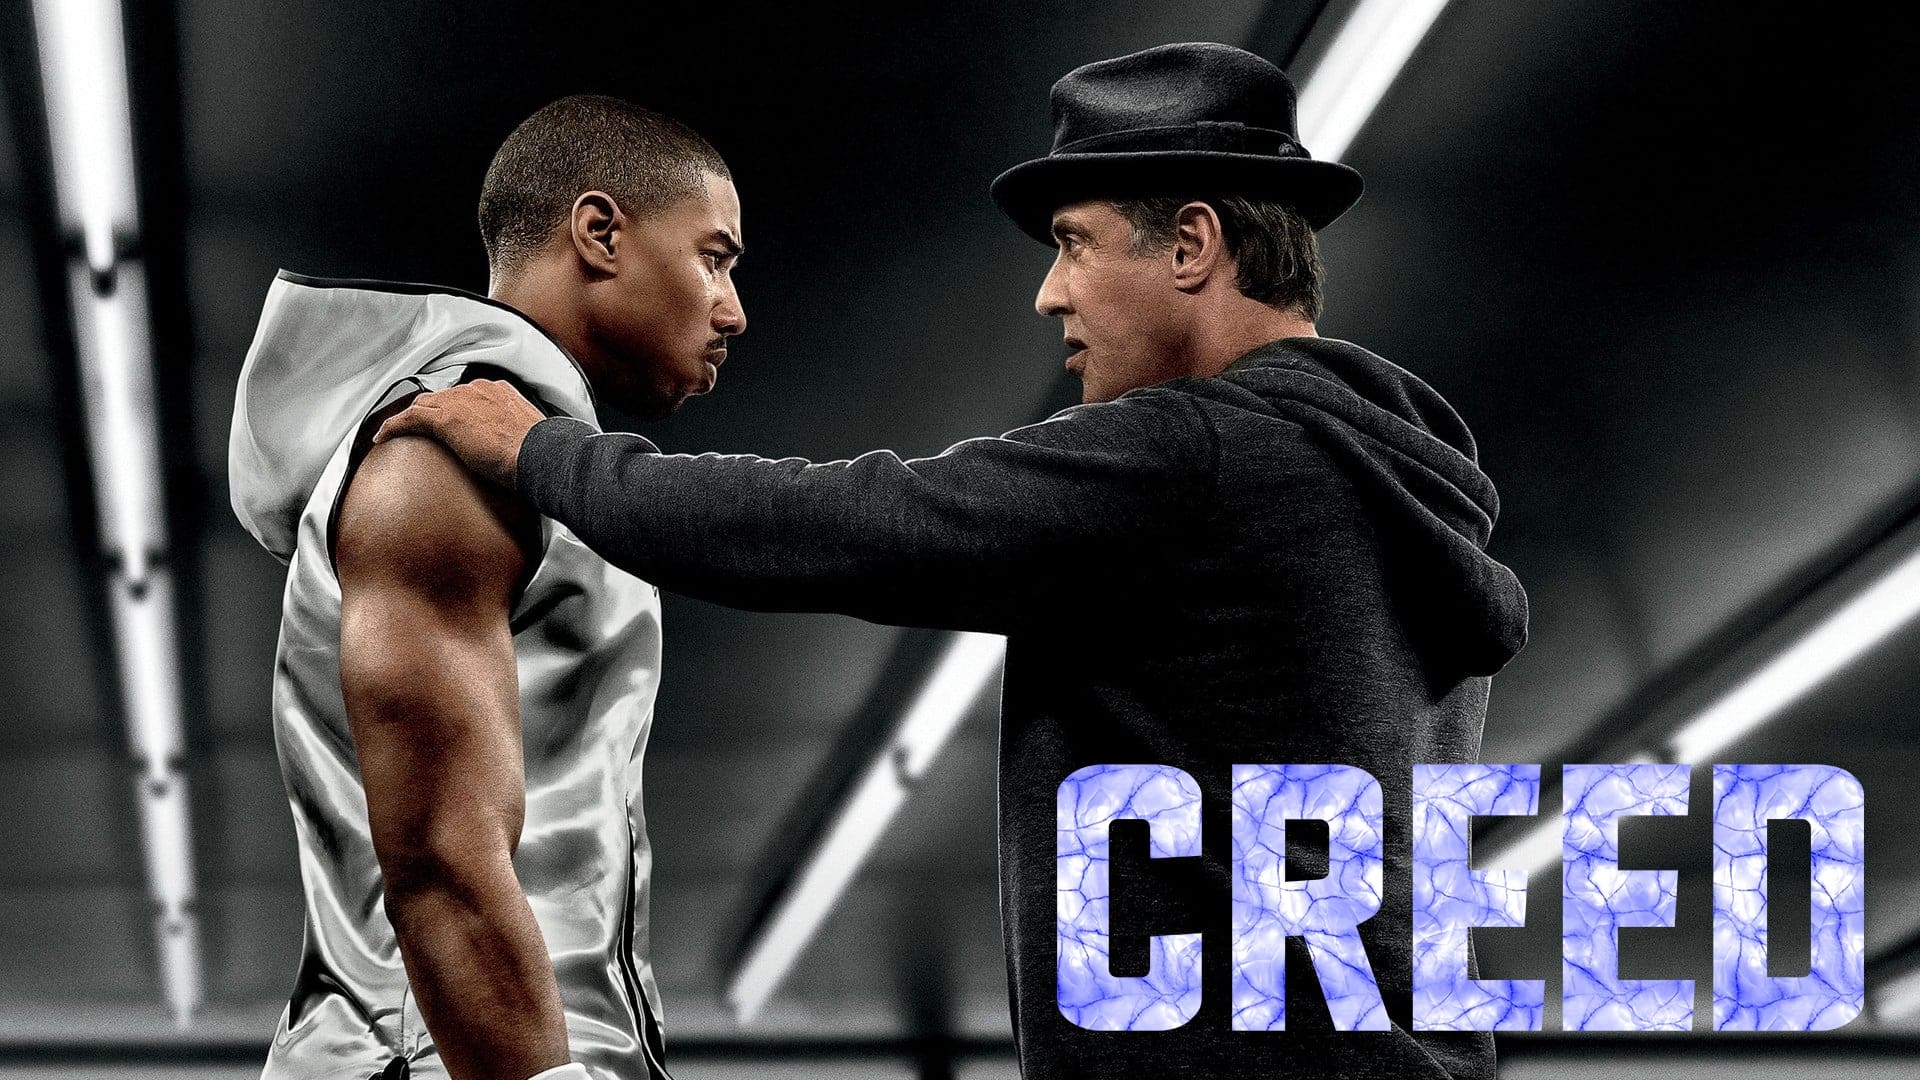 Creed: Narodziny legendy